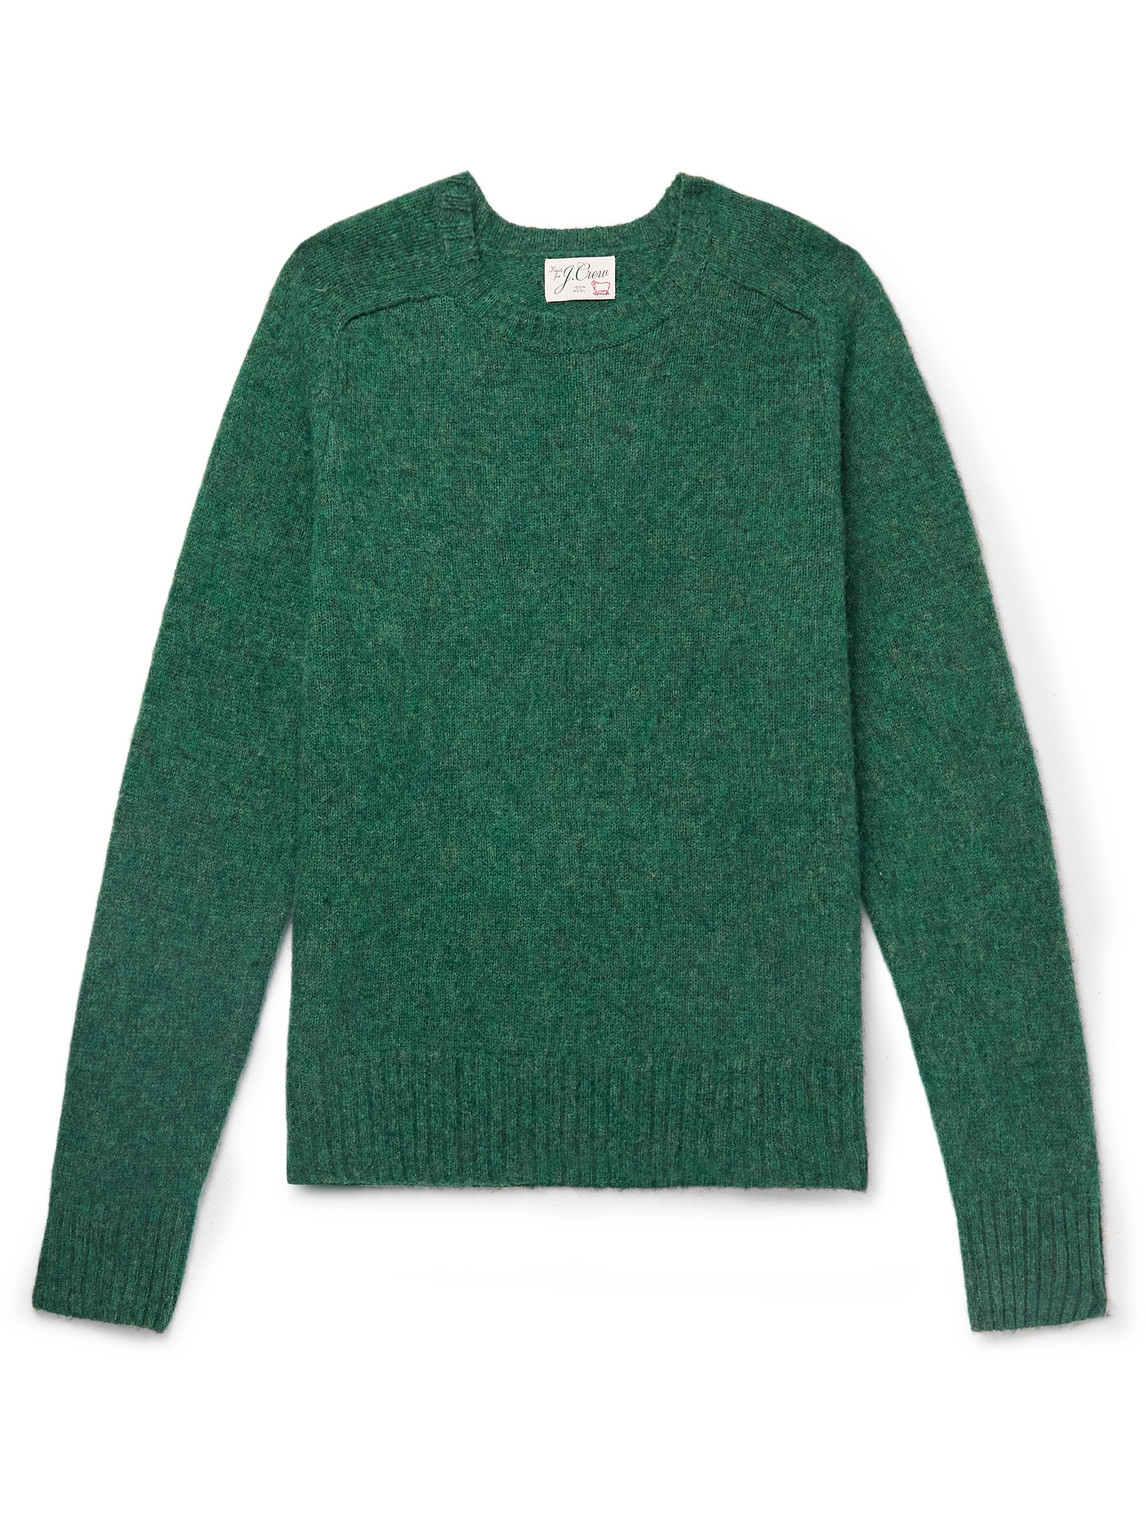 J.crew Wool Sweater In Green